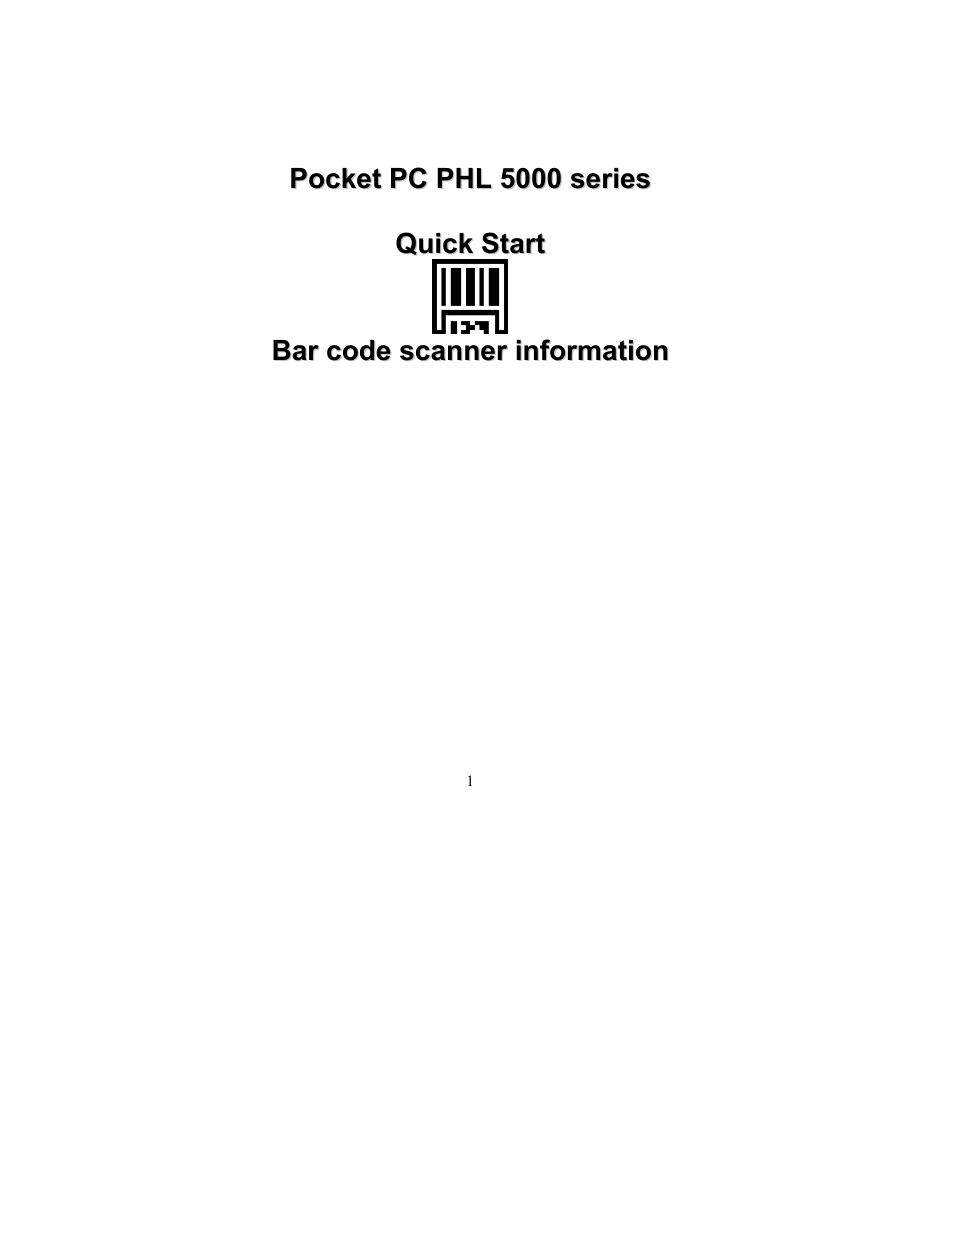 PHL 5200 addendum